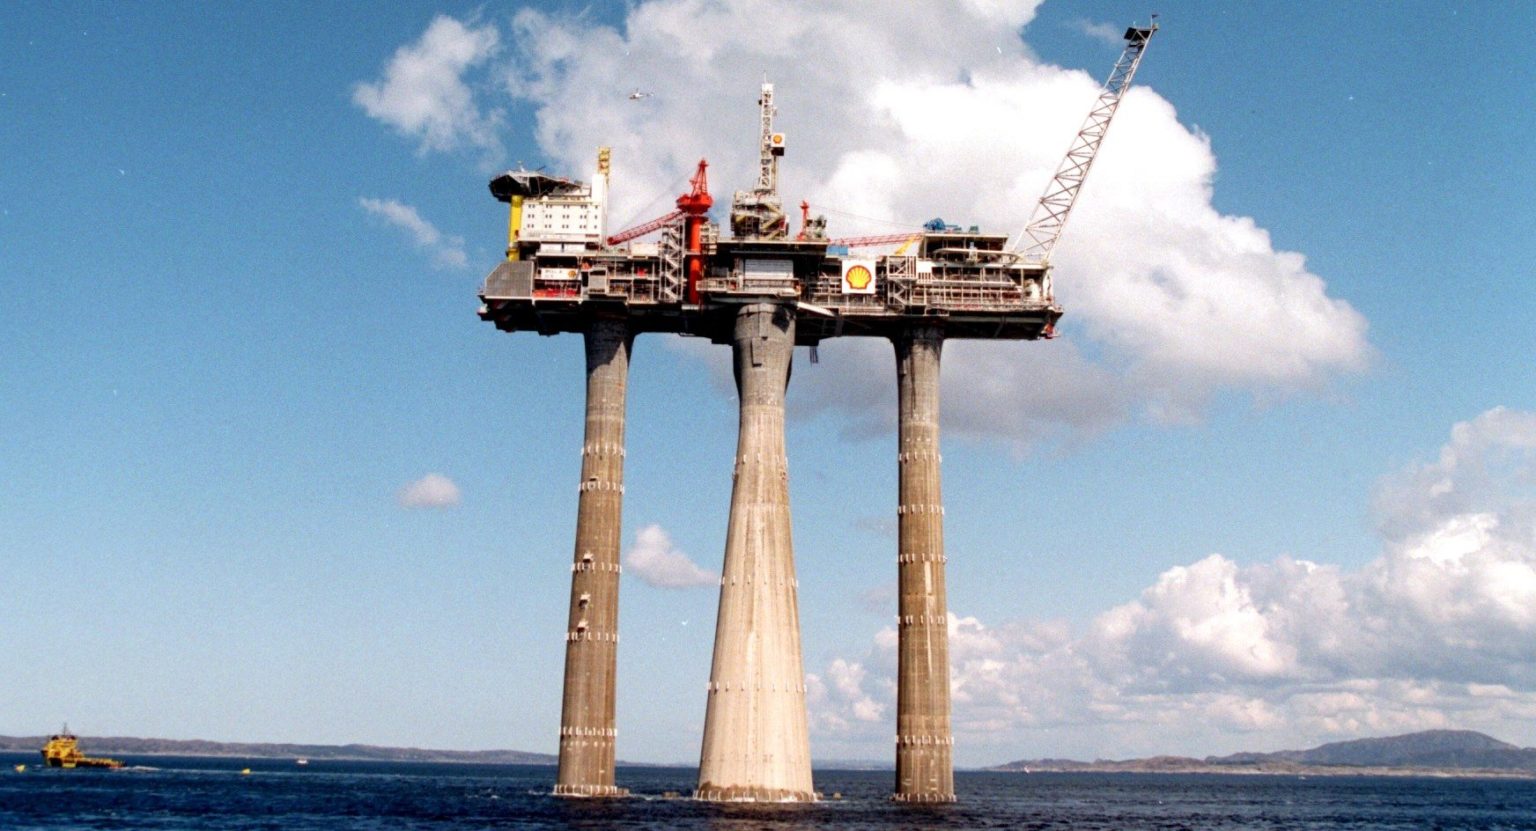 Høy betongplattform med tre lange bein slepes ut fra norskekysten under en blå himmel med stor hvit sky